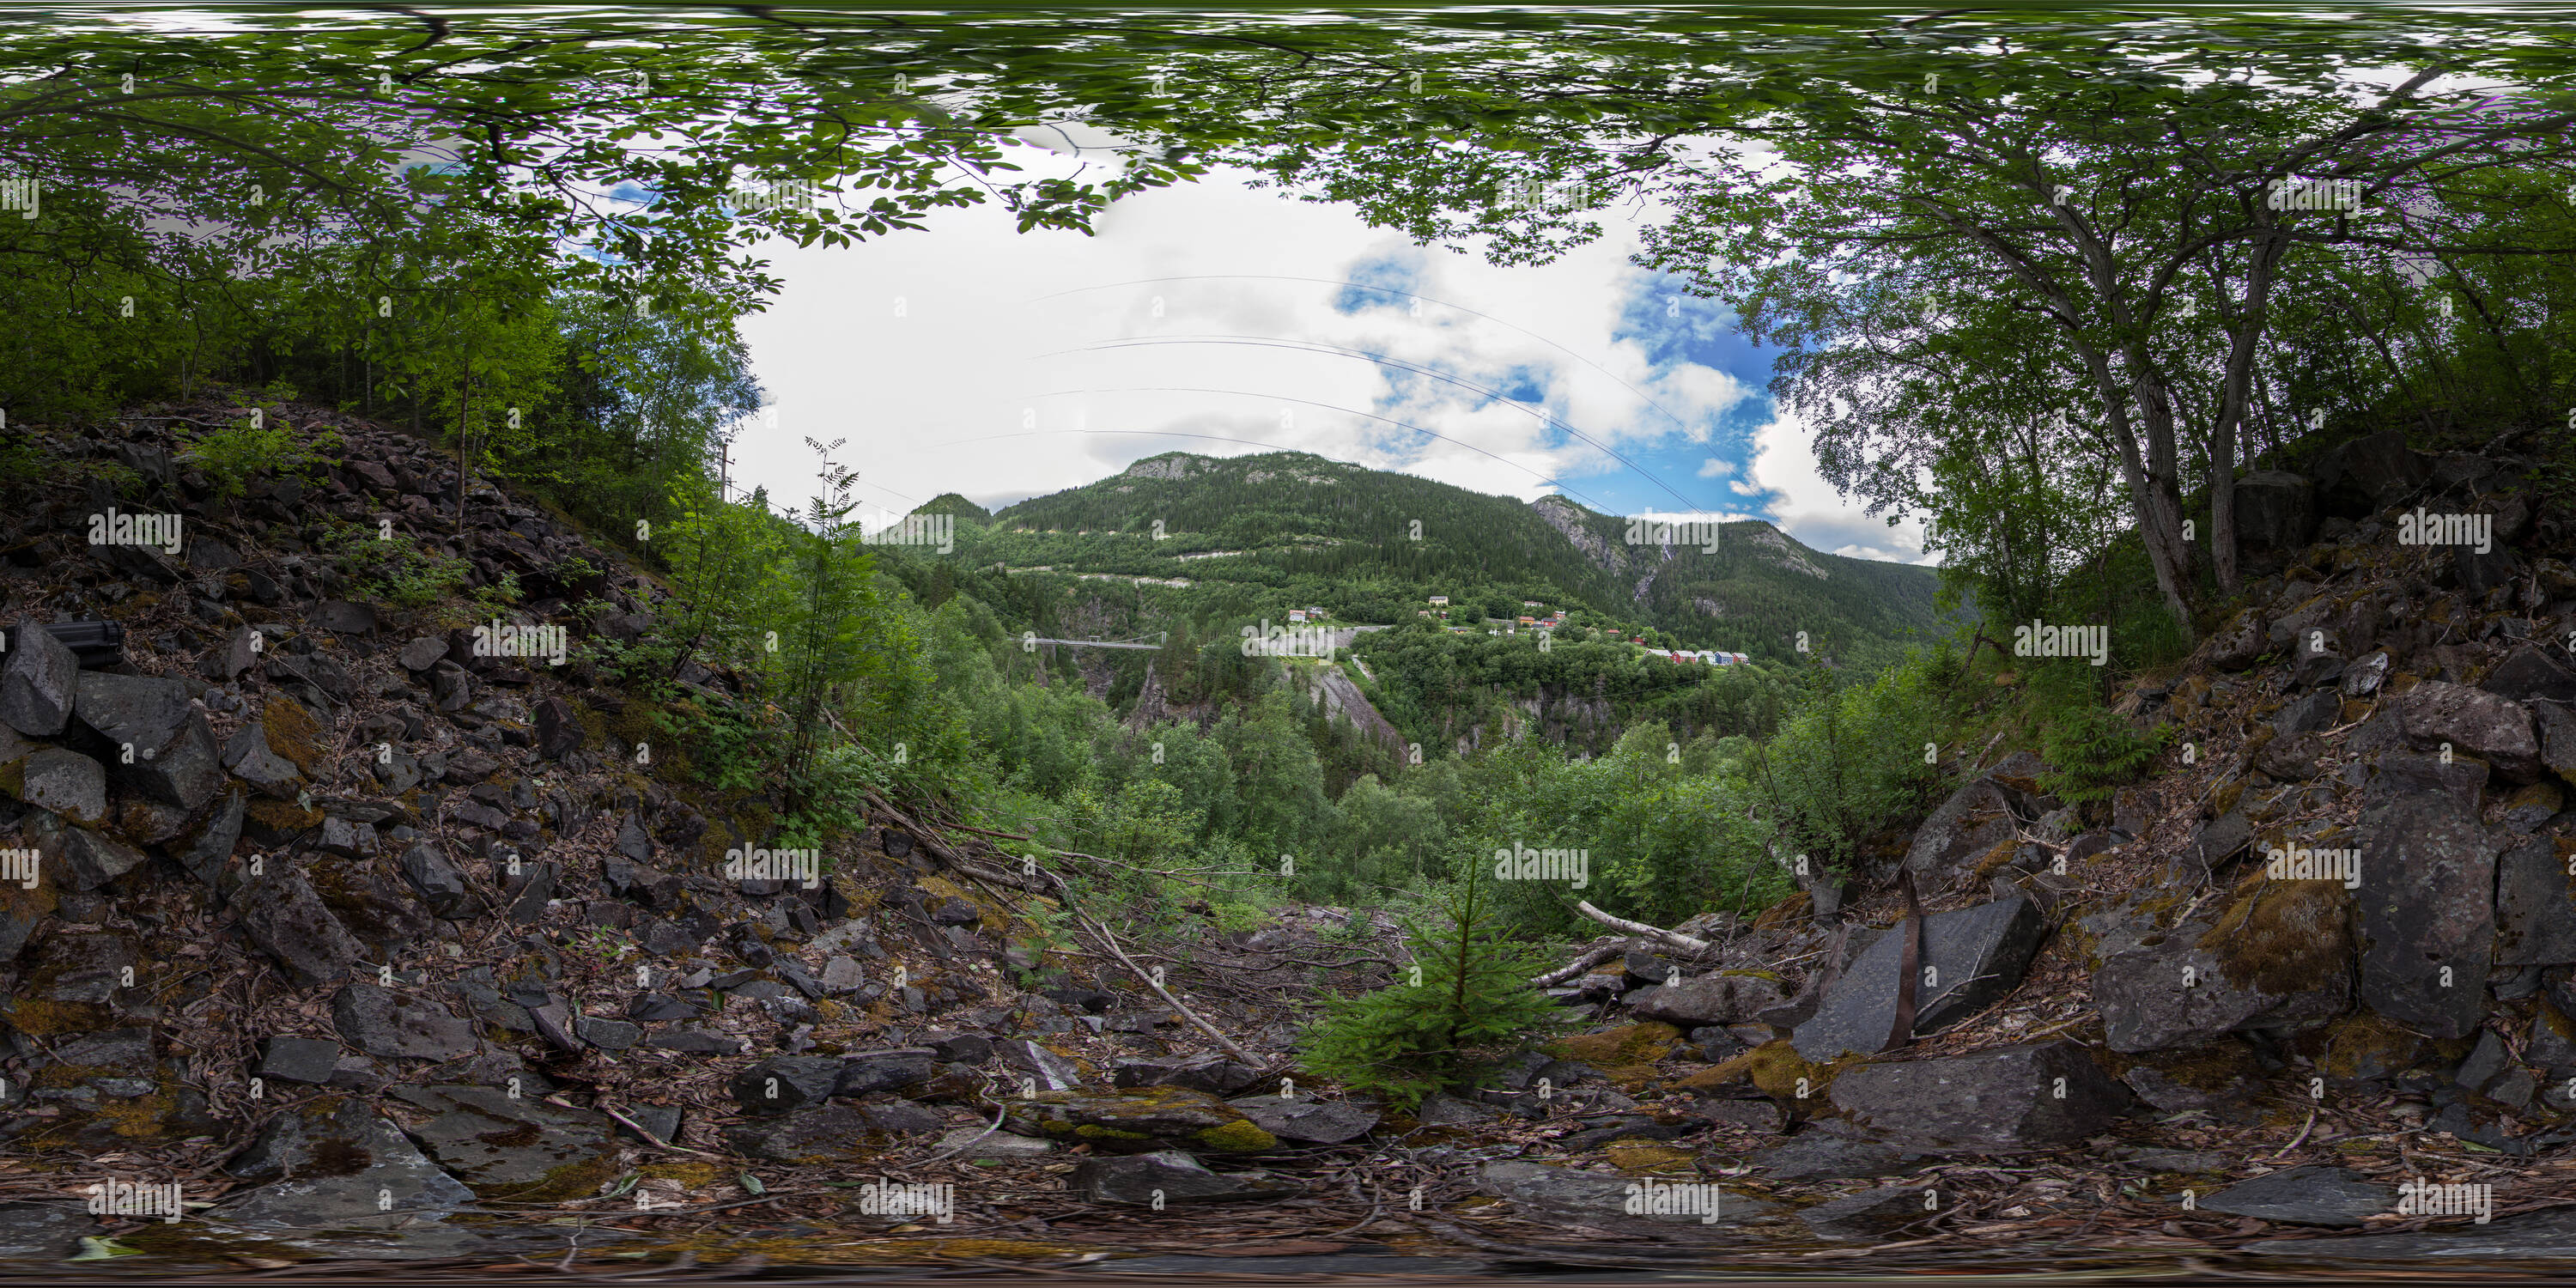 360 degree panoramic view of Vemork